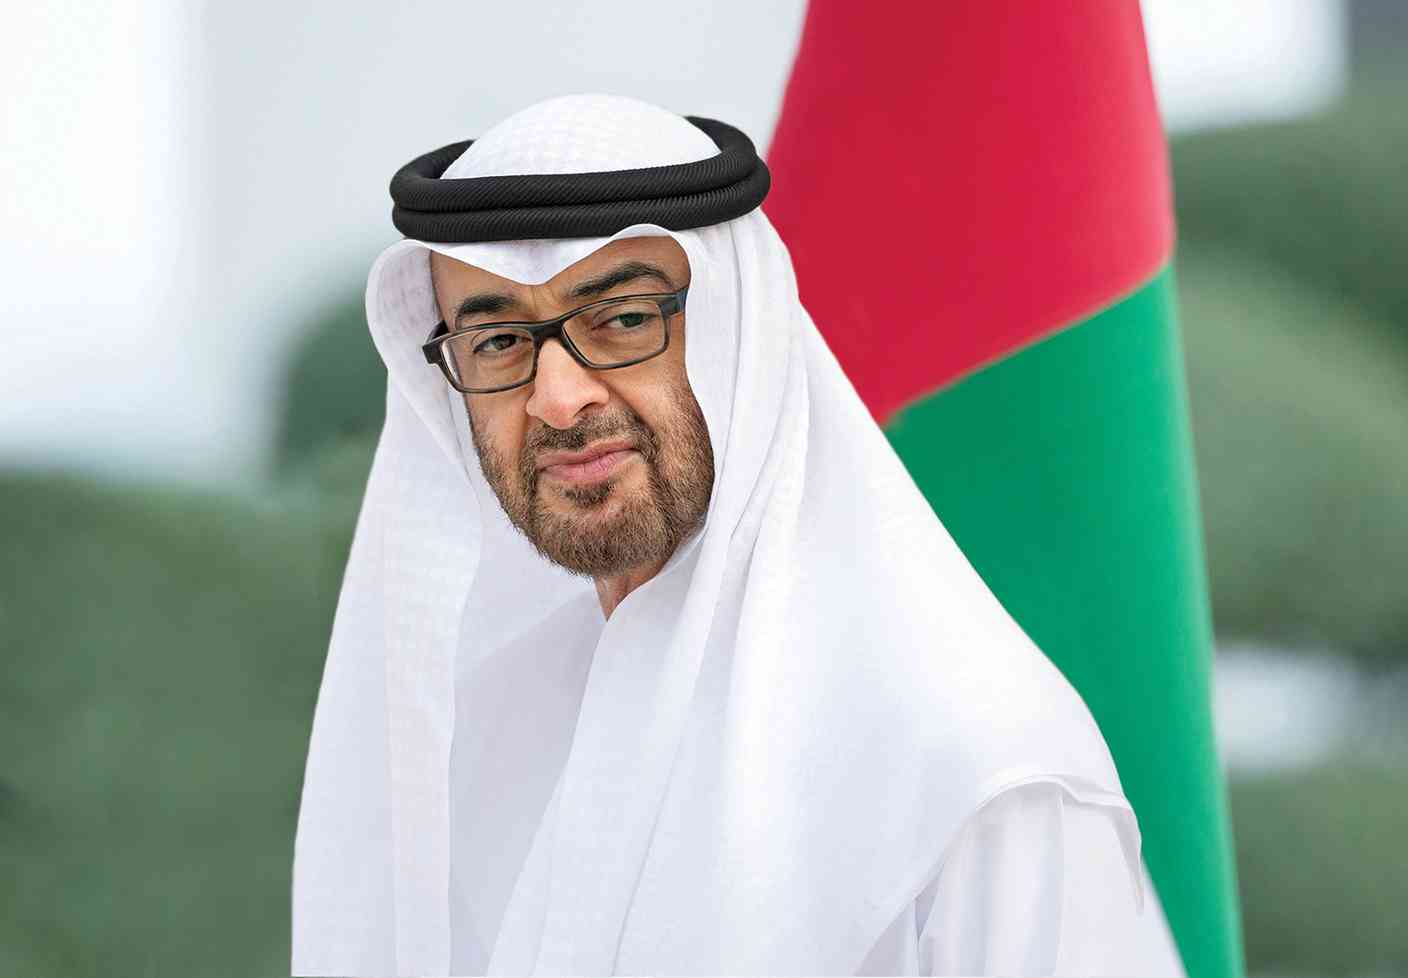 بمناسبة انتخاب الشيخ محمدبن زايد رئيسا للدولة:  الأمين العام يبارك لشعب وحكومة الامارات